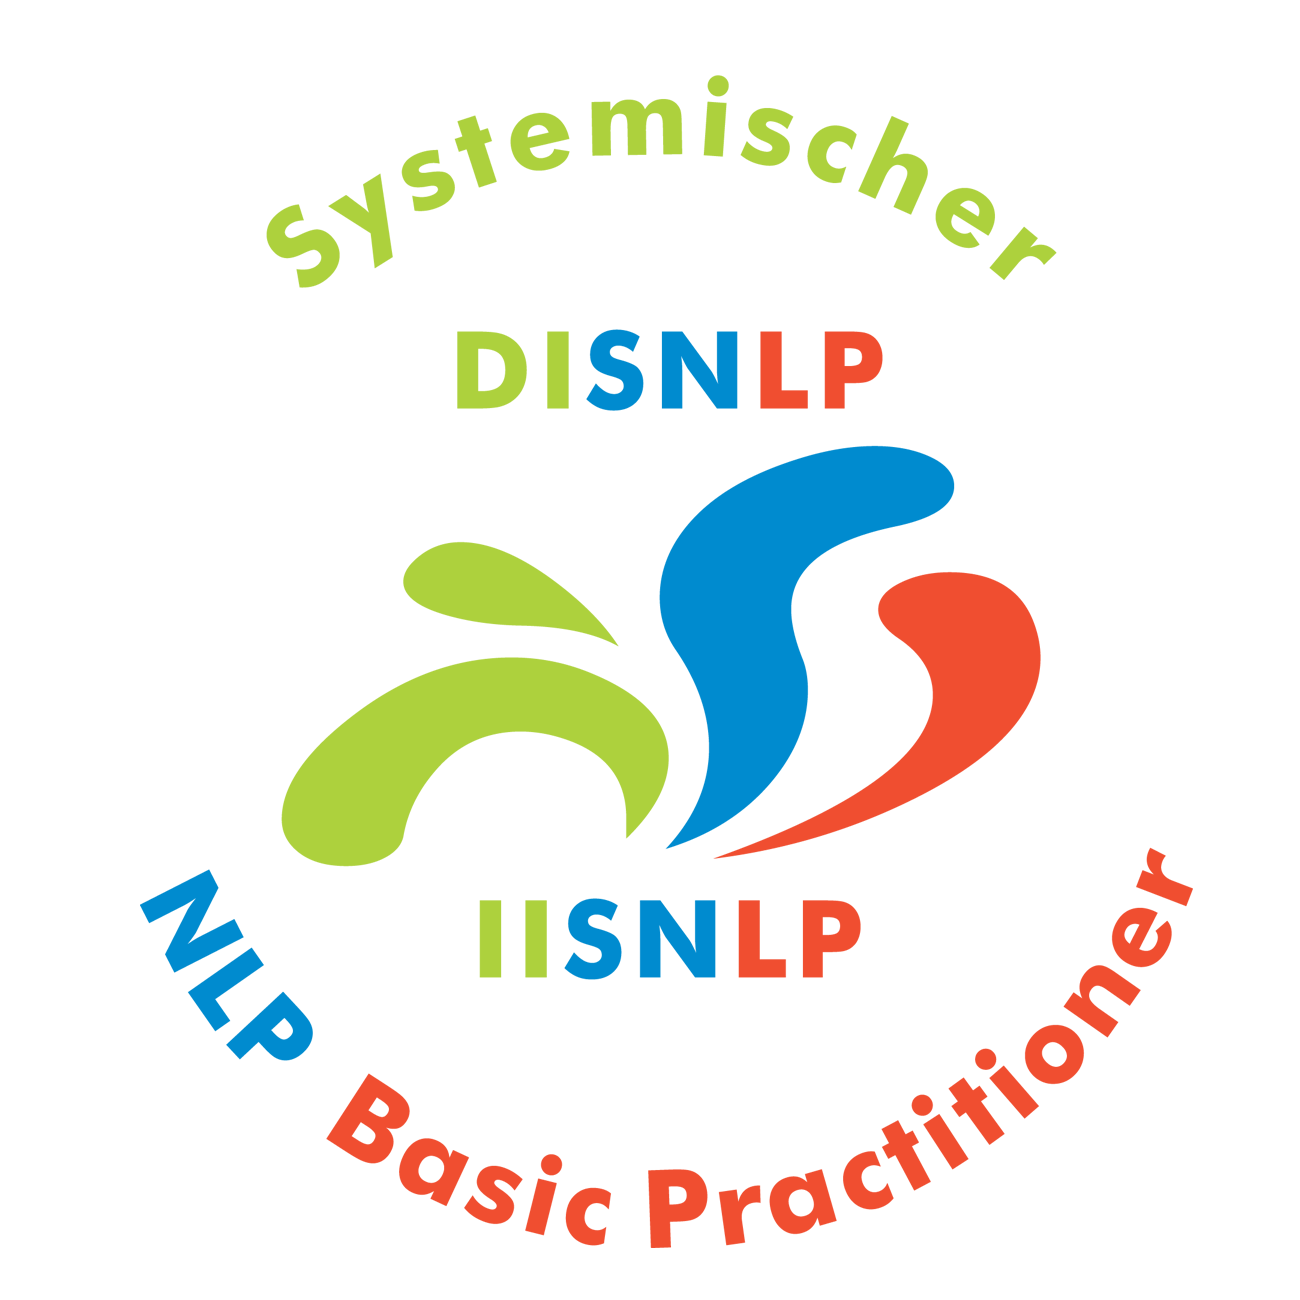 Seminar Selbstbewusstsein, Selbstvertrauen, Selbstwert, Selbstsicherheit stärken Erlangen Hoechstadt mit NLP Coaching Kurs für mehr Selbstbewusstsein